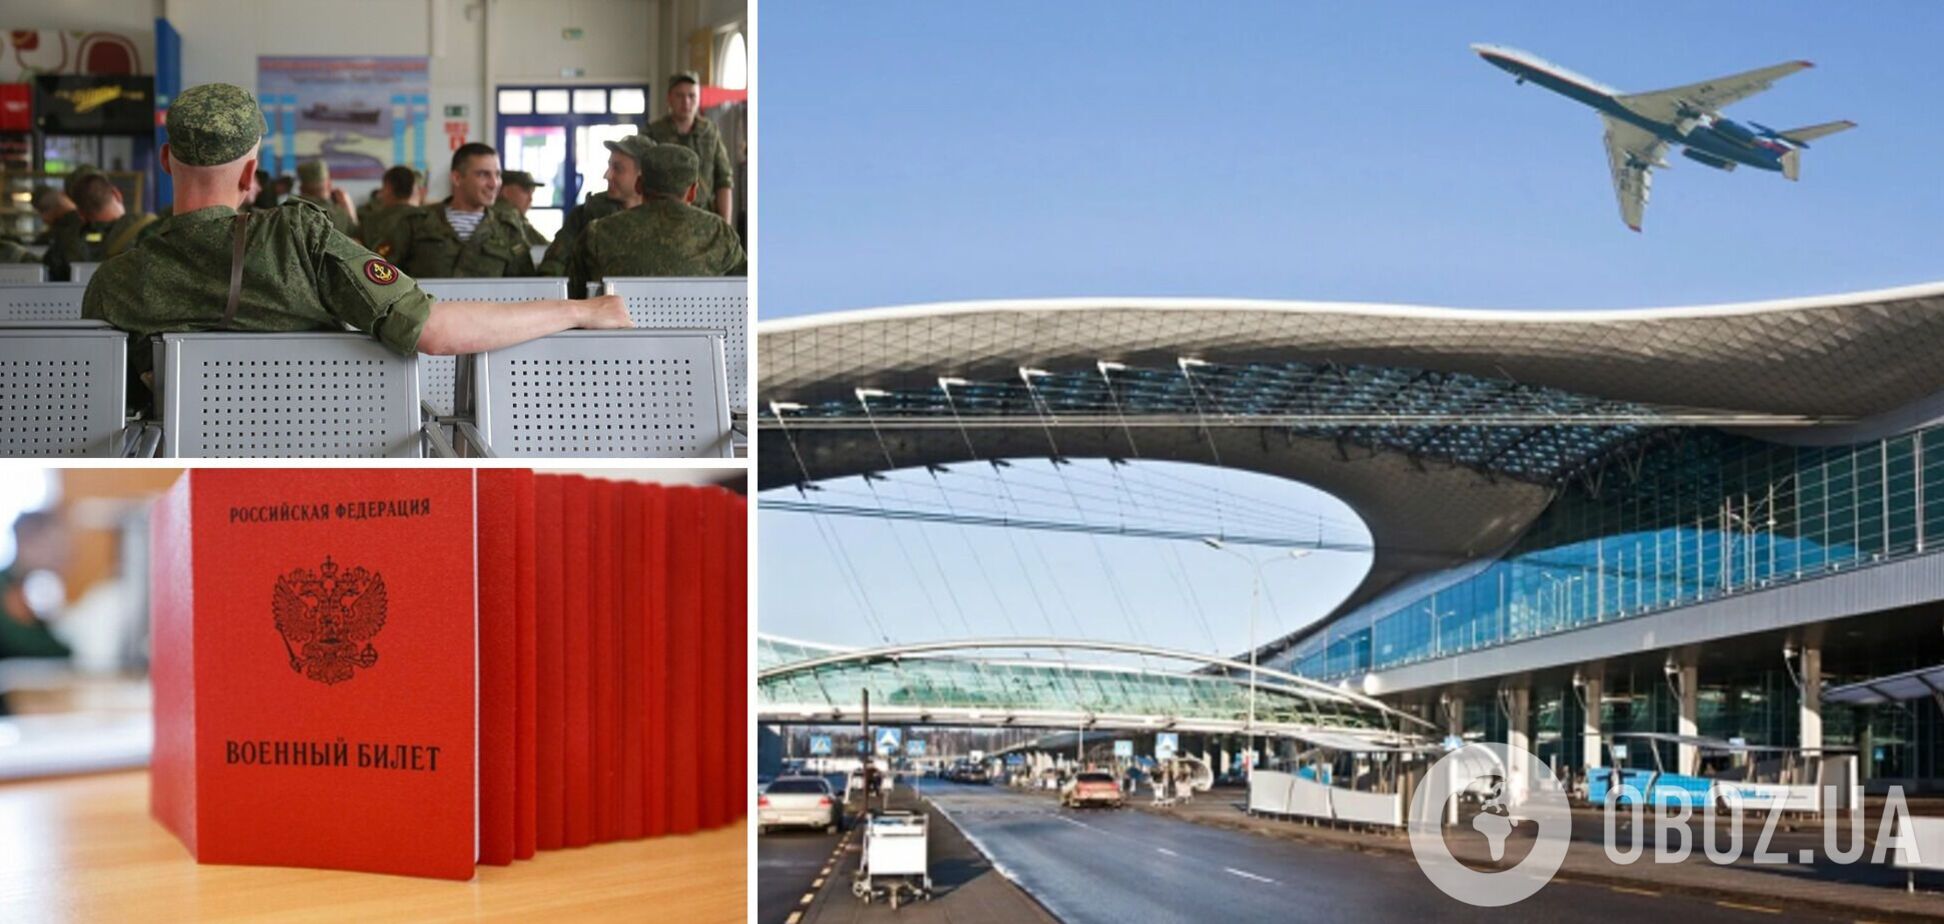 В российских аэропортах запрещают выезд мужчинам по спискам из военкоматов